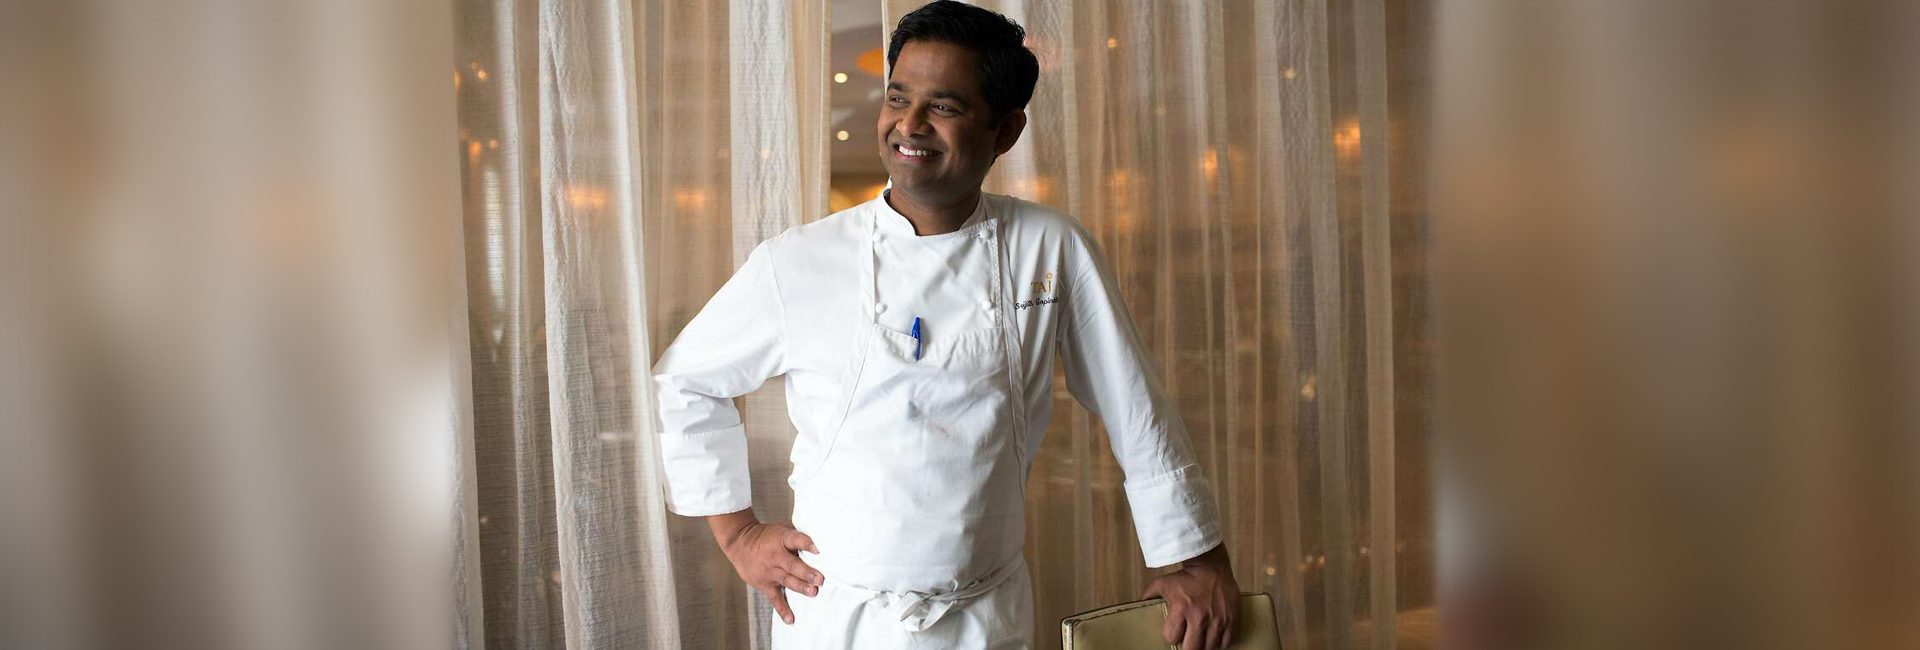 O chef indiano com estrela Michelin, Srijith Gopinath, está levando a paleta de especiarias do sul da Índia para o mundo